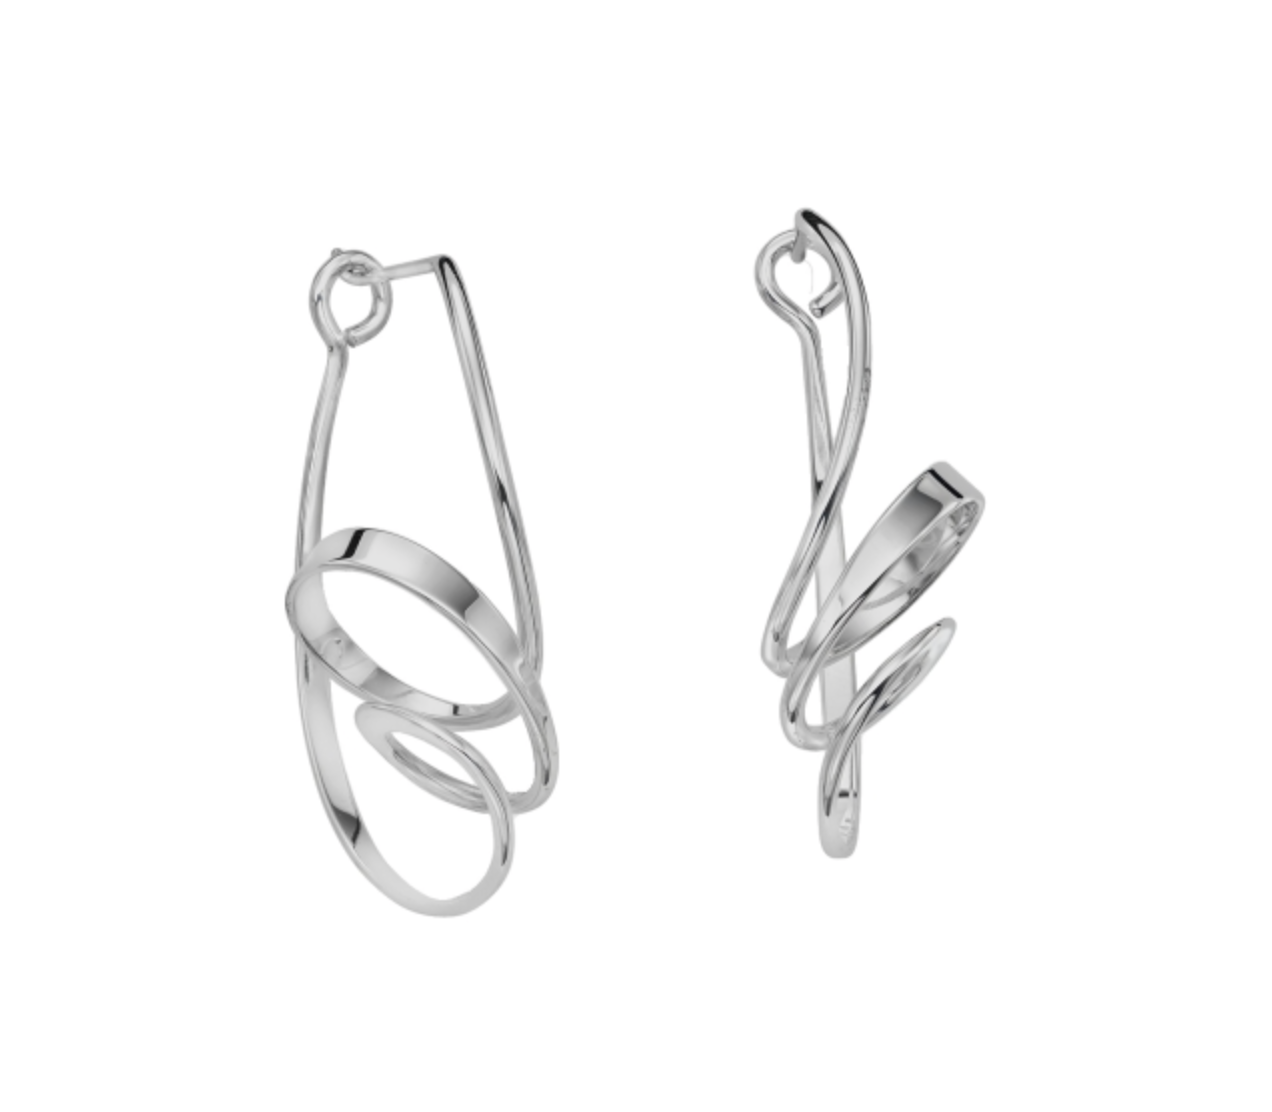 Chaparral Sterling Silver Earrings, Medium